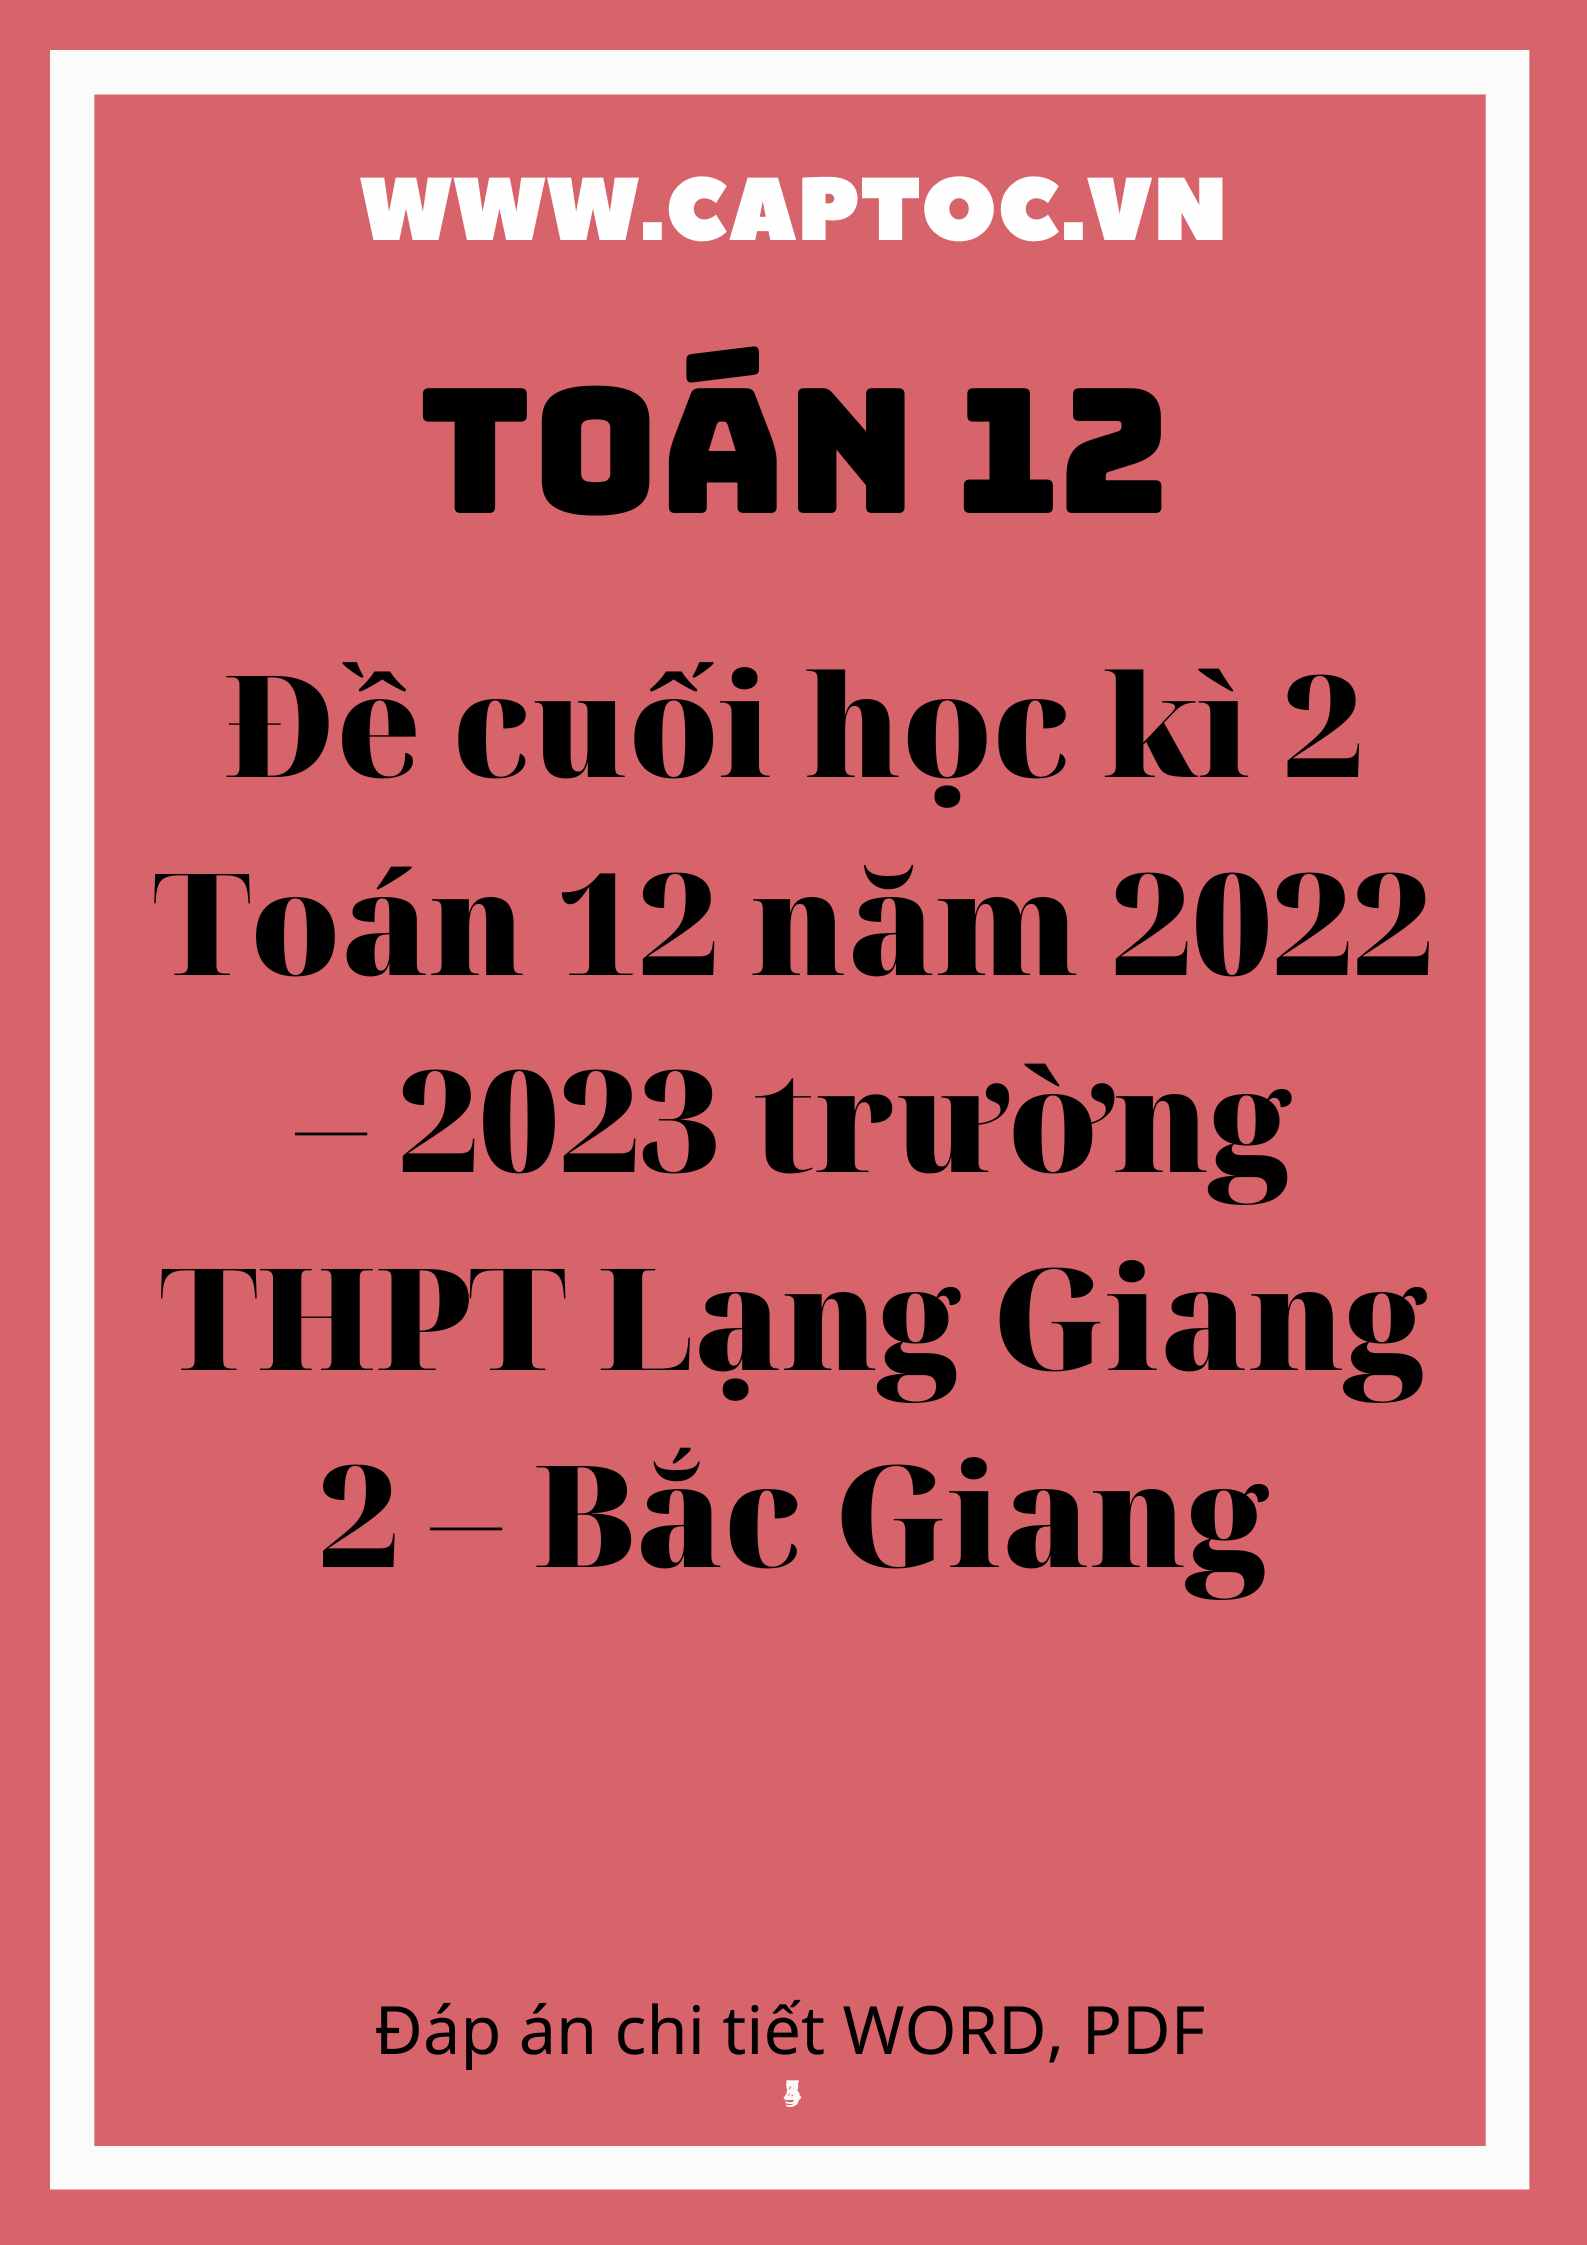 Đề cuối học kì 2 Toán 12 năm 2022 – 2023 trường THPT Lạng Giang 2 – Bắc Giang